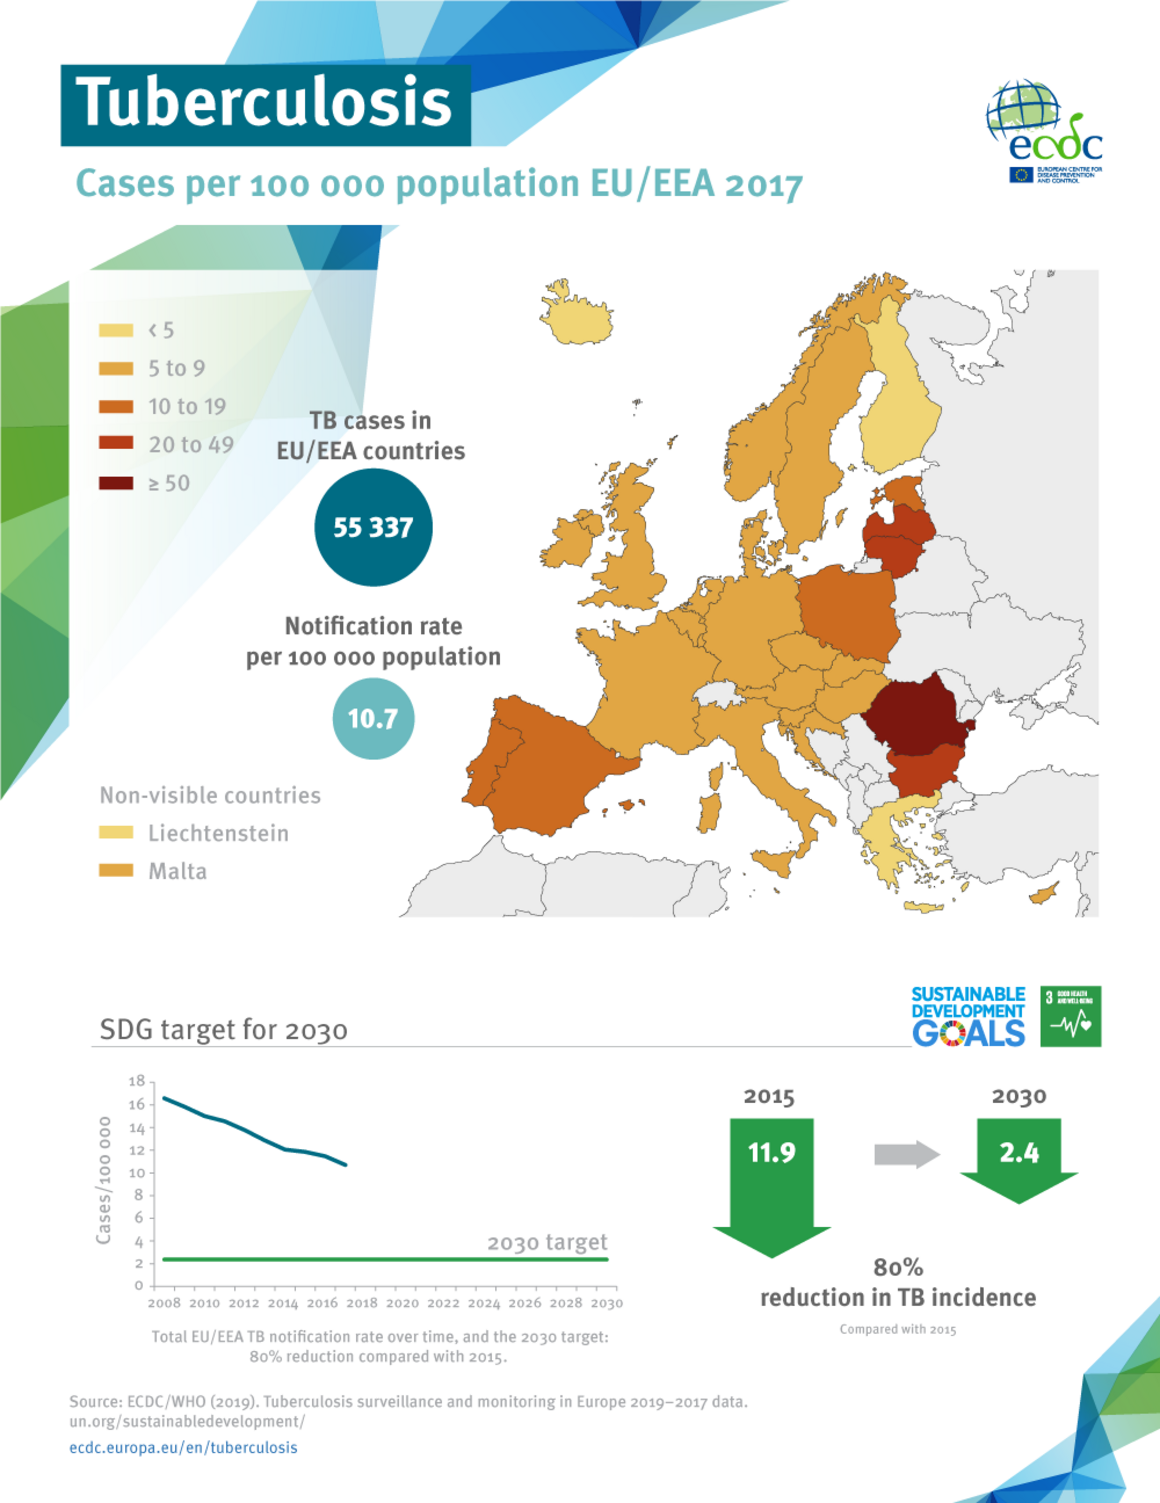 Tuberculosis in the EU/EEA 2017